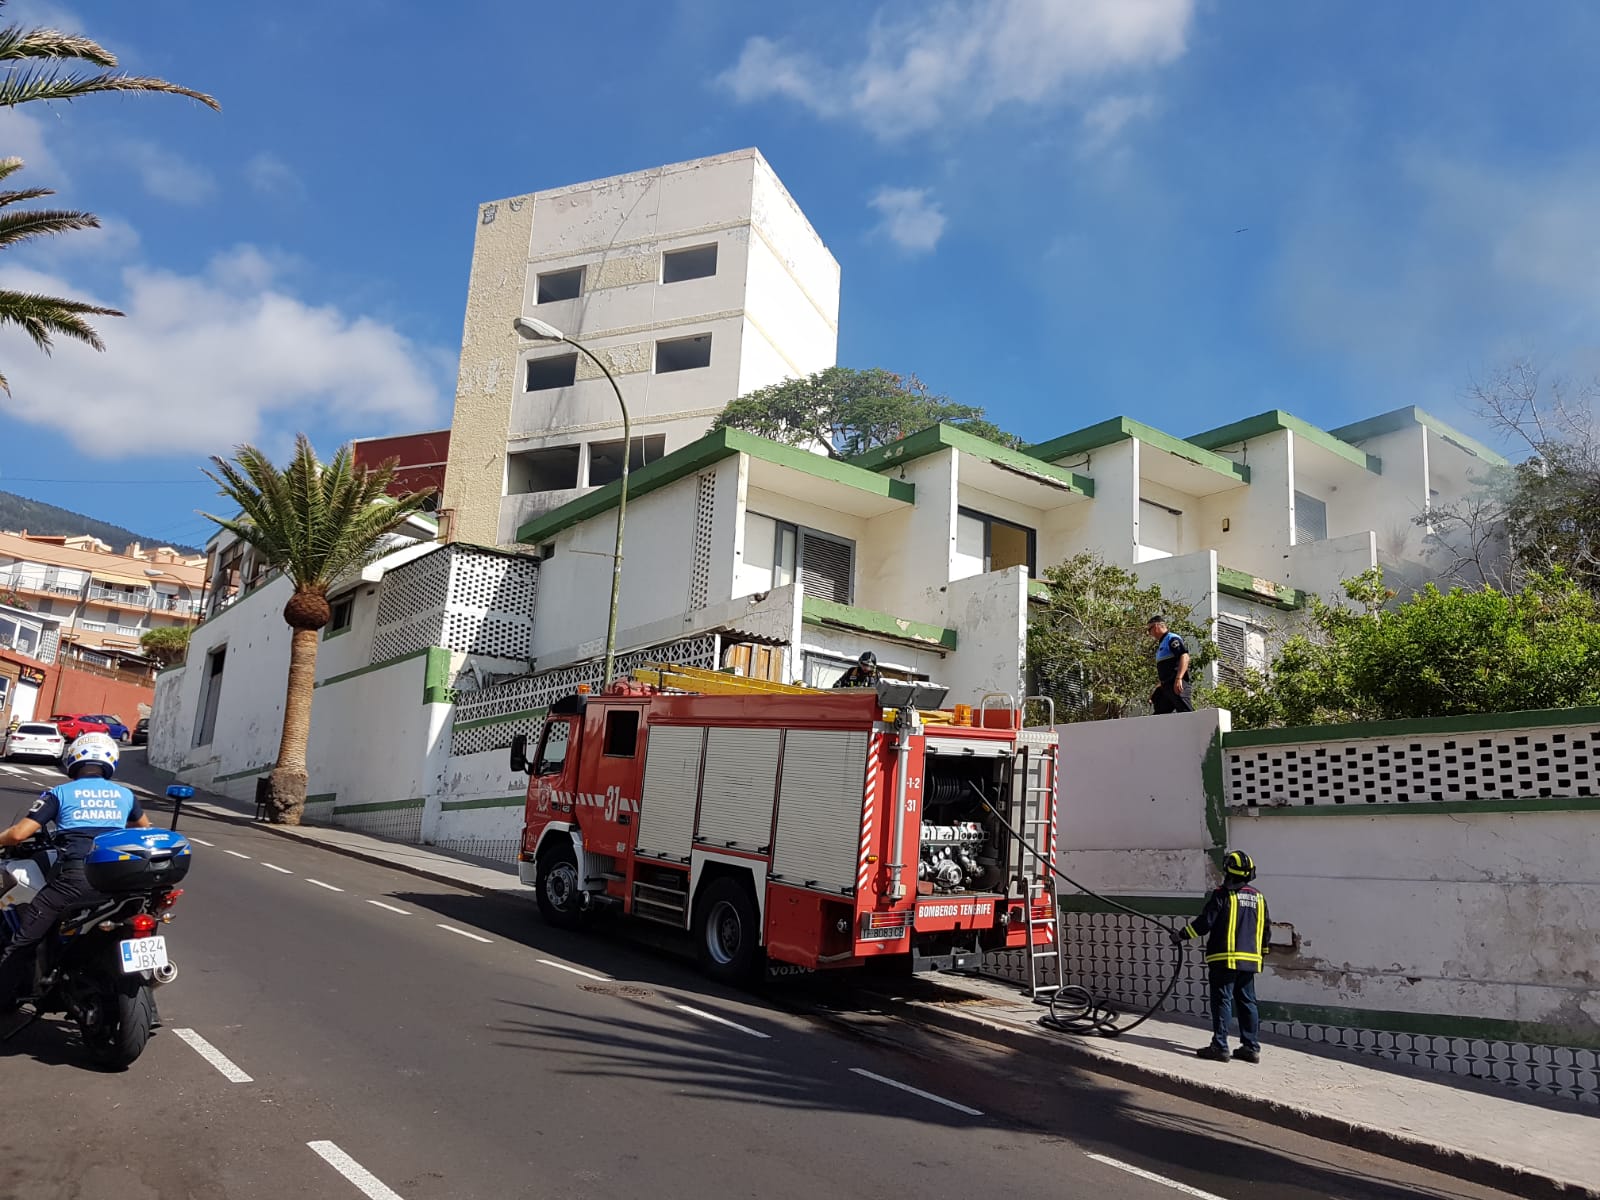 Wieder Feuer auf dem Gelände des verlassenen Hotels “Tenerife Tour” in Candelaria